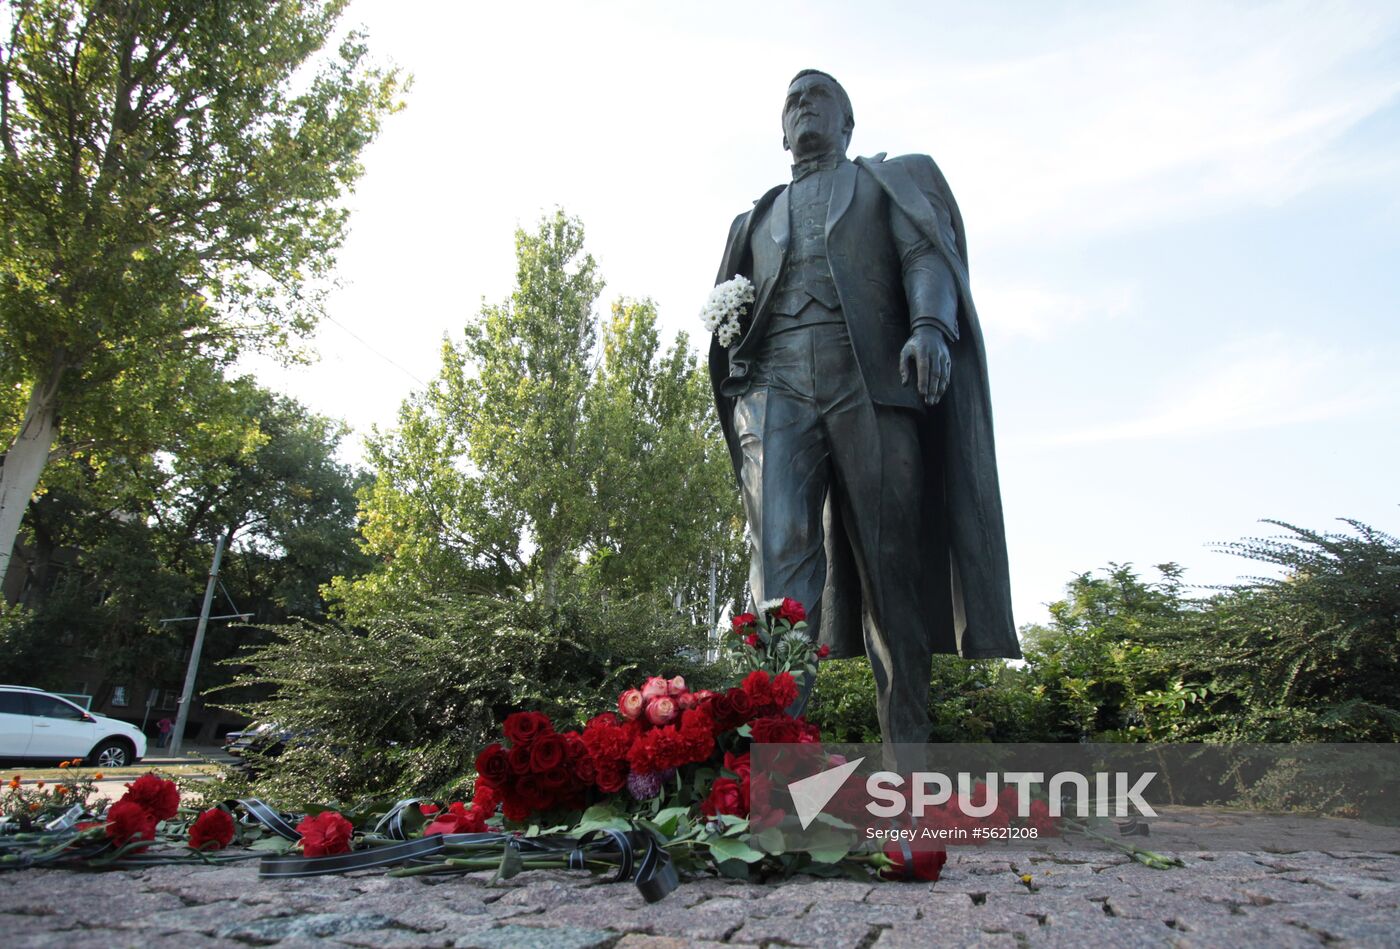 Flowers in memory of Iosif Kobzon